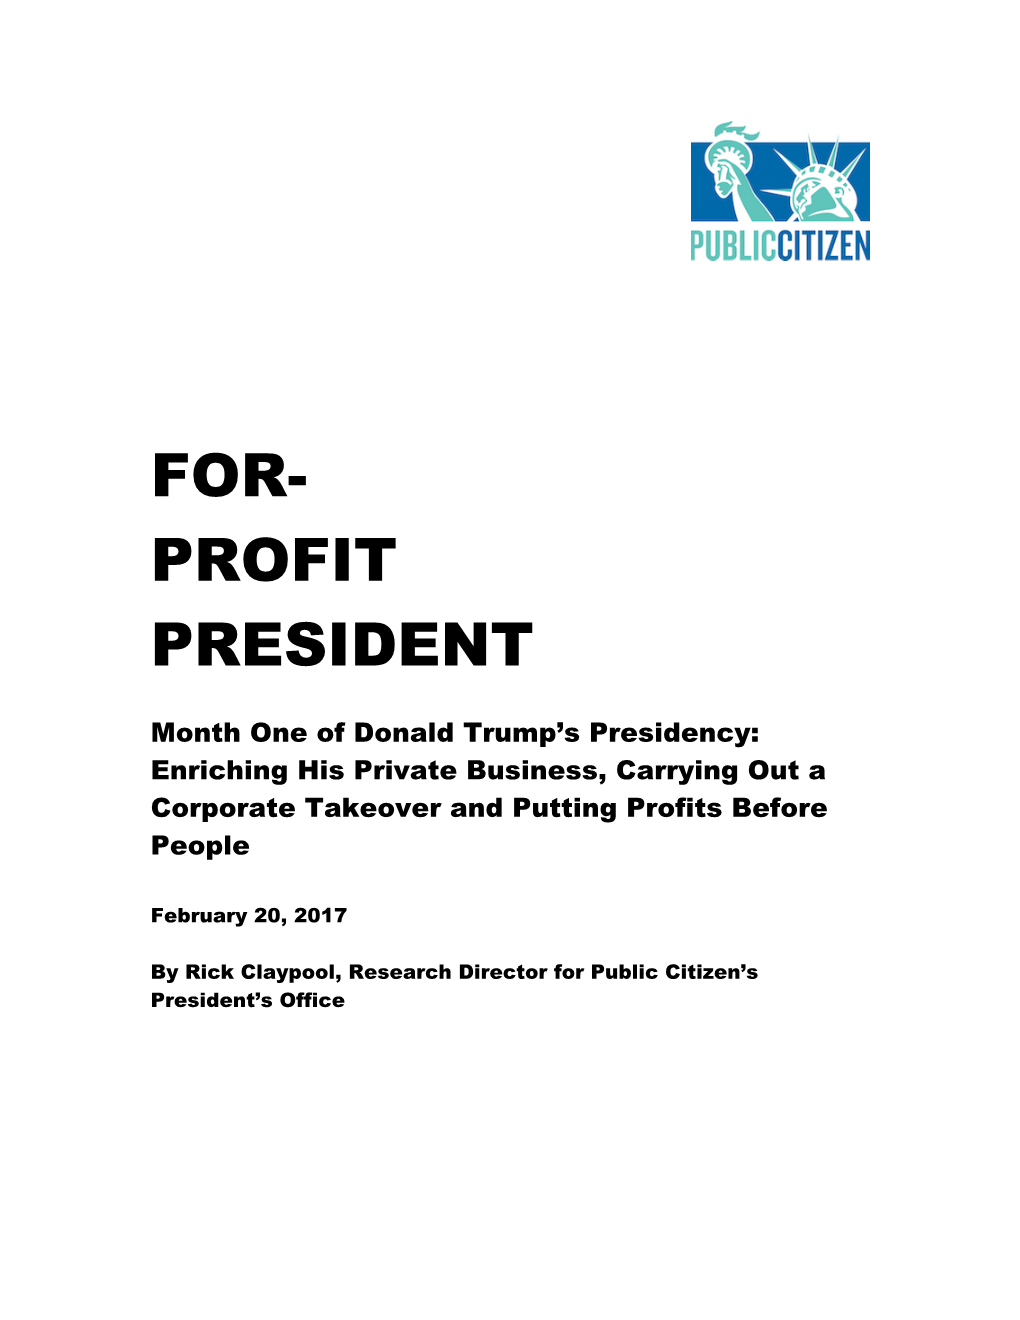 For- Profit President